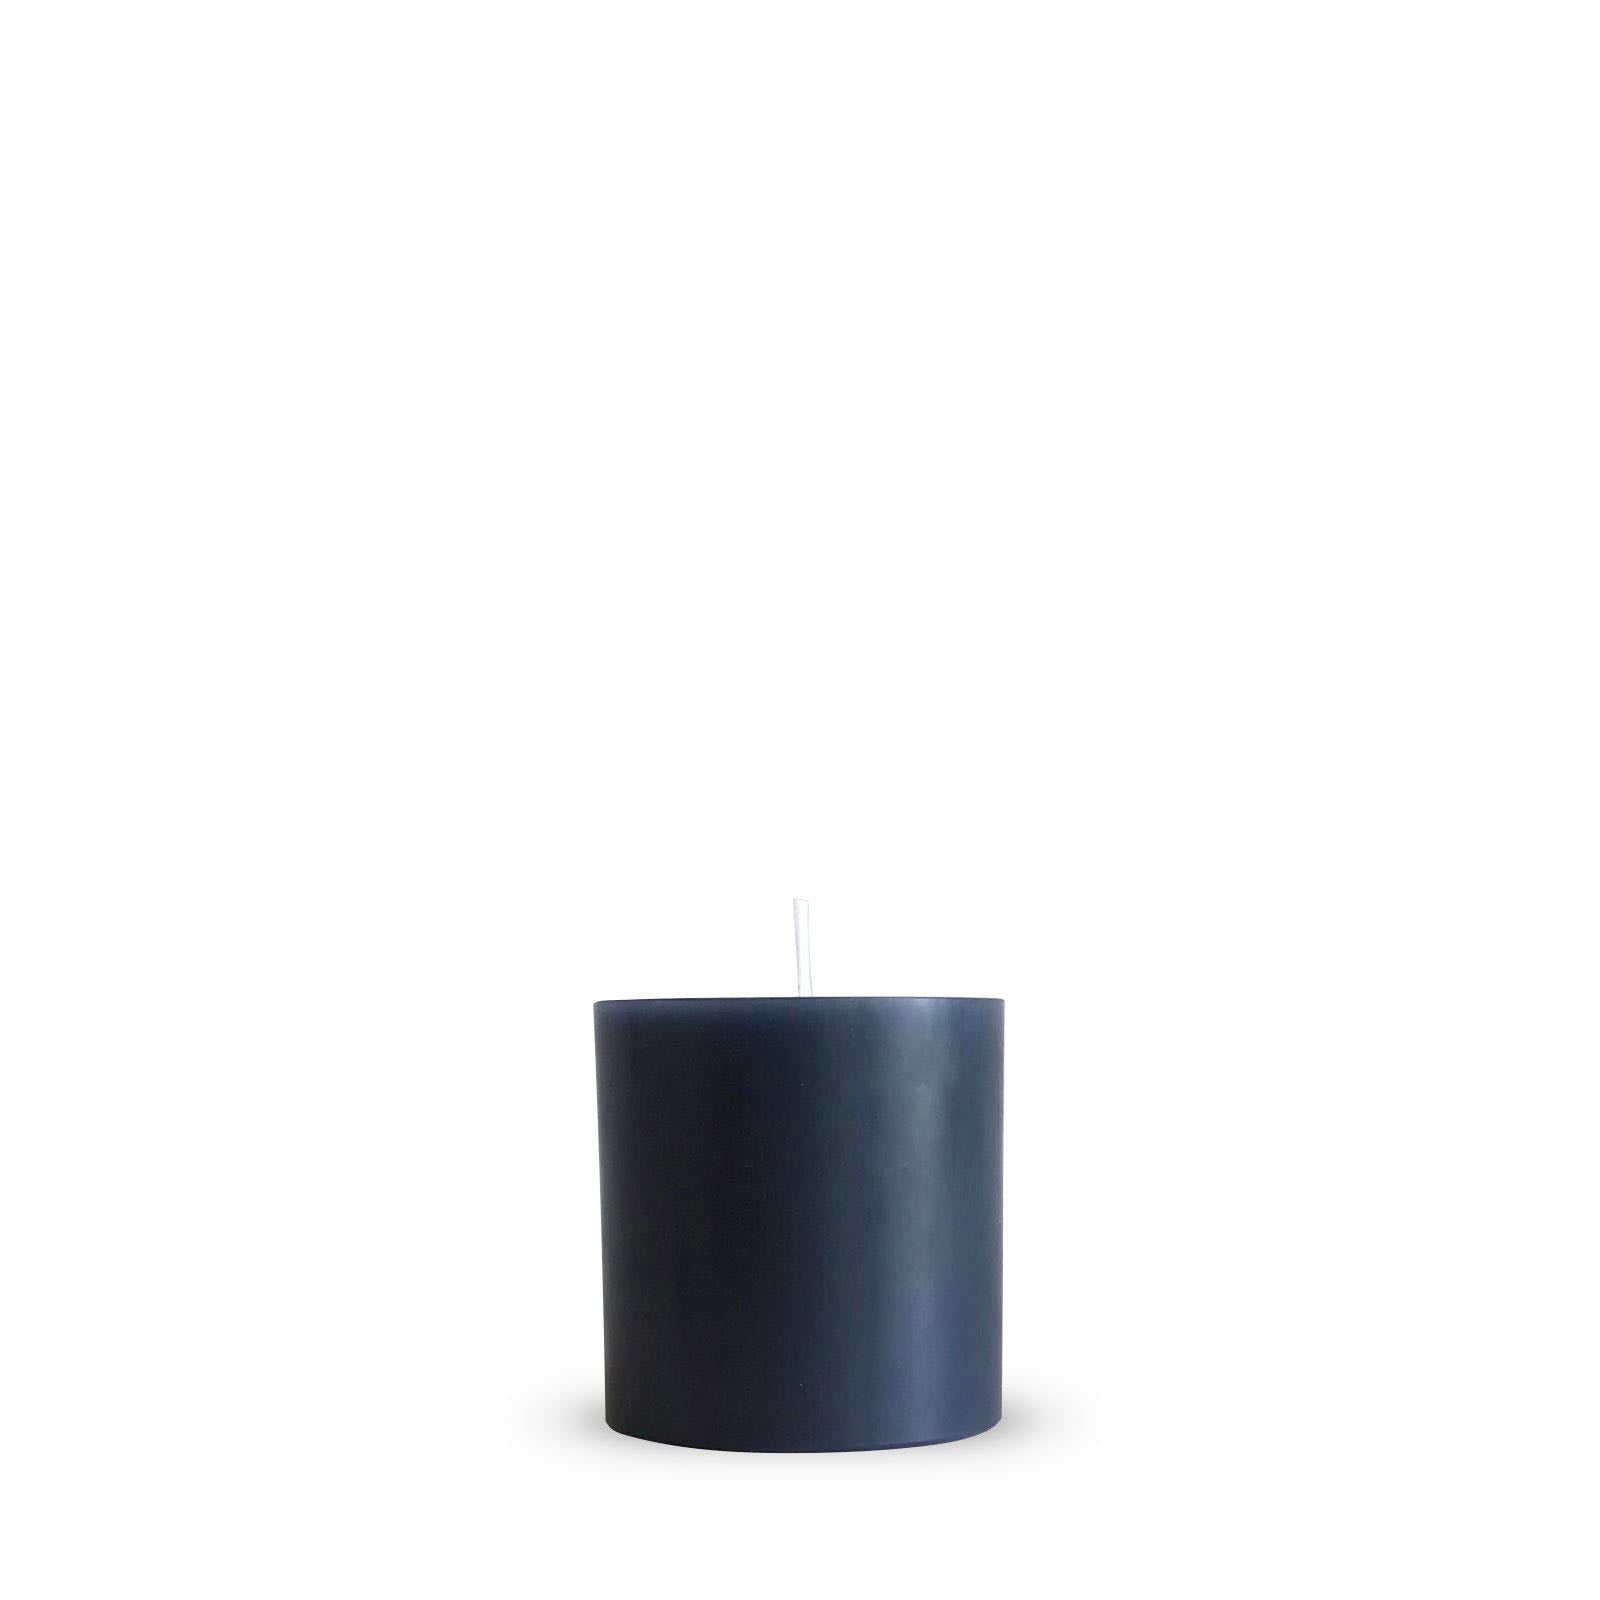 Grey pillar candle